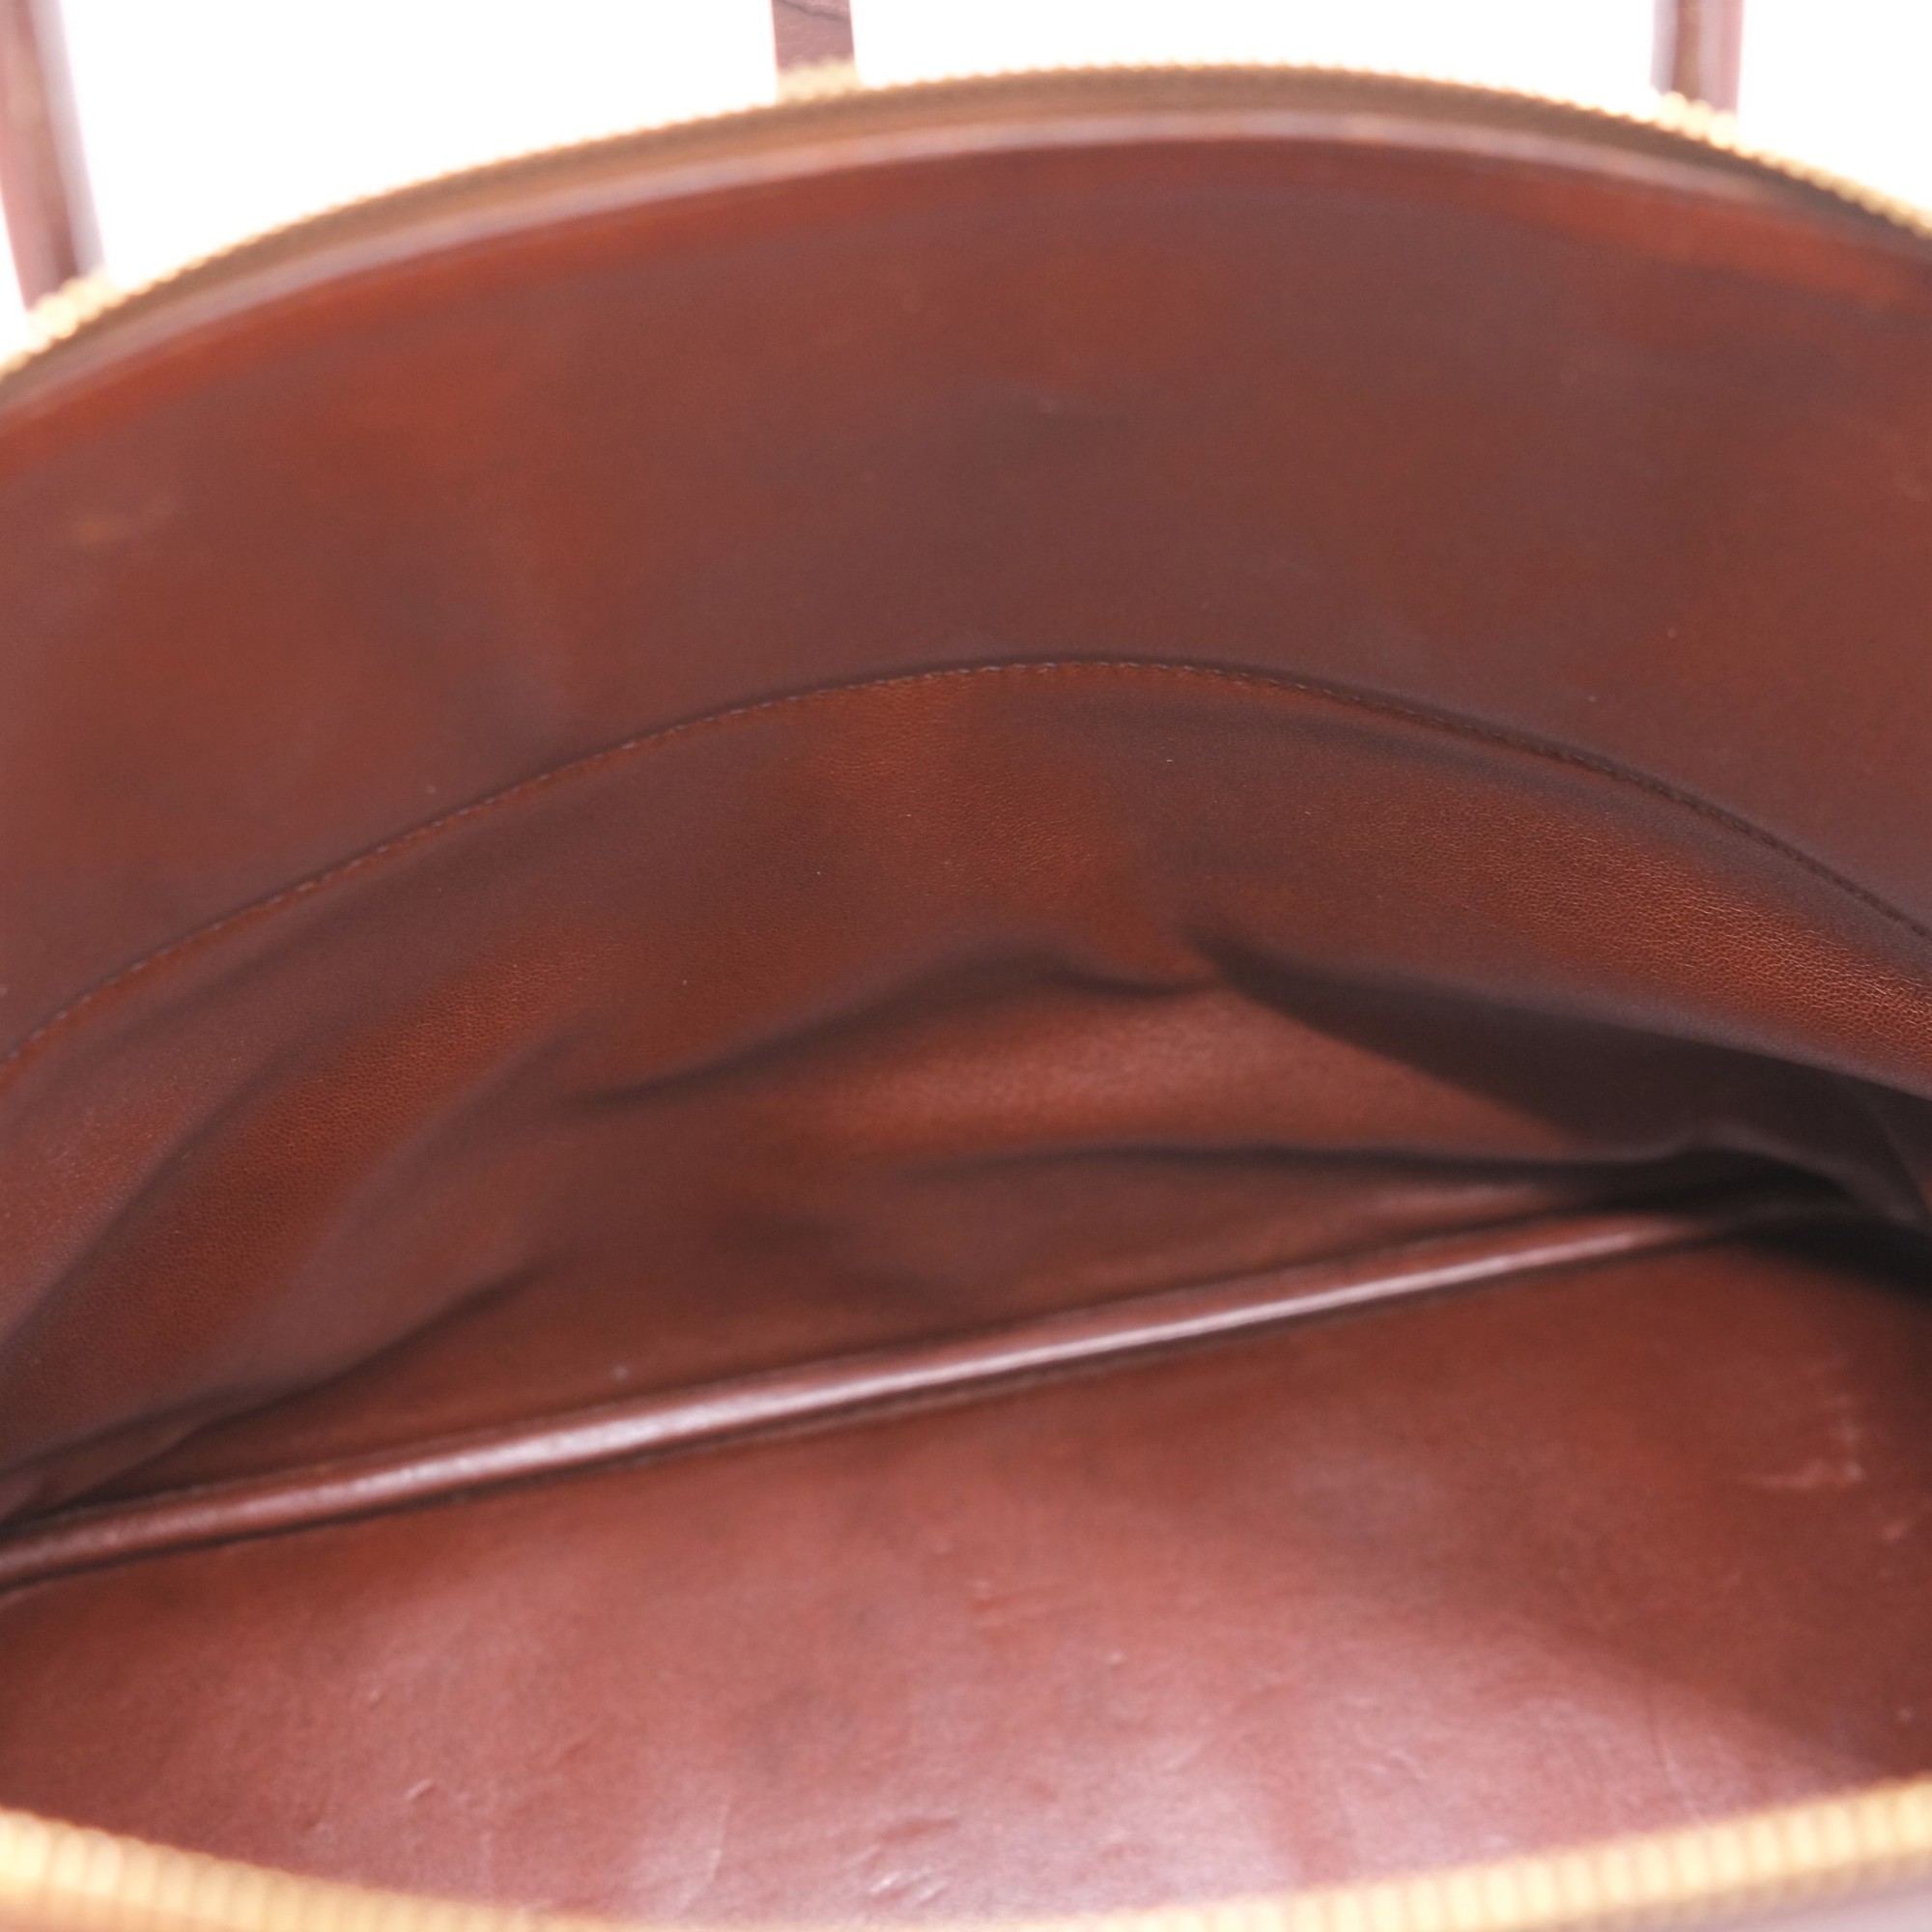 HERMES Bolide 35 Handbag Tote Bag Taurillon Clemence Brown